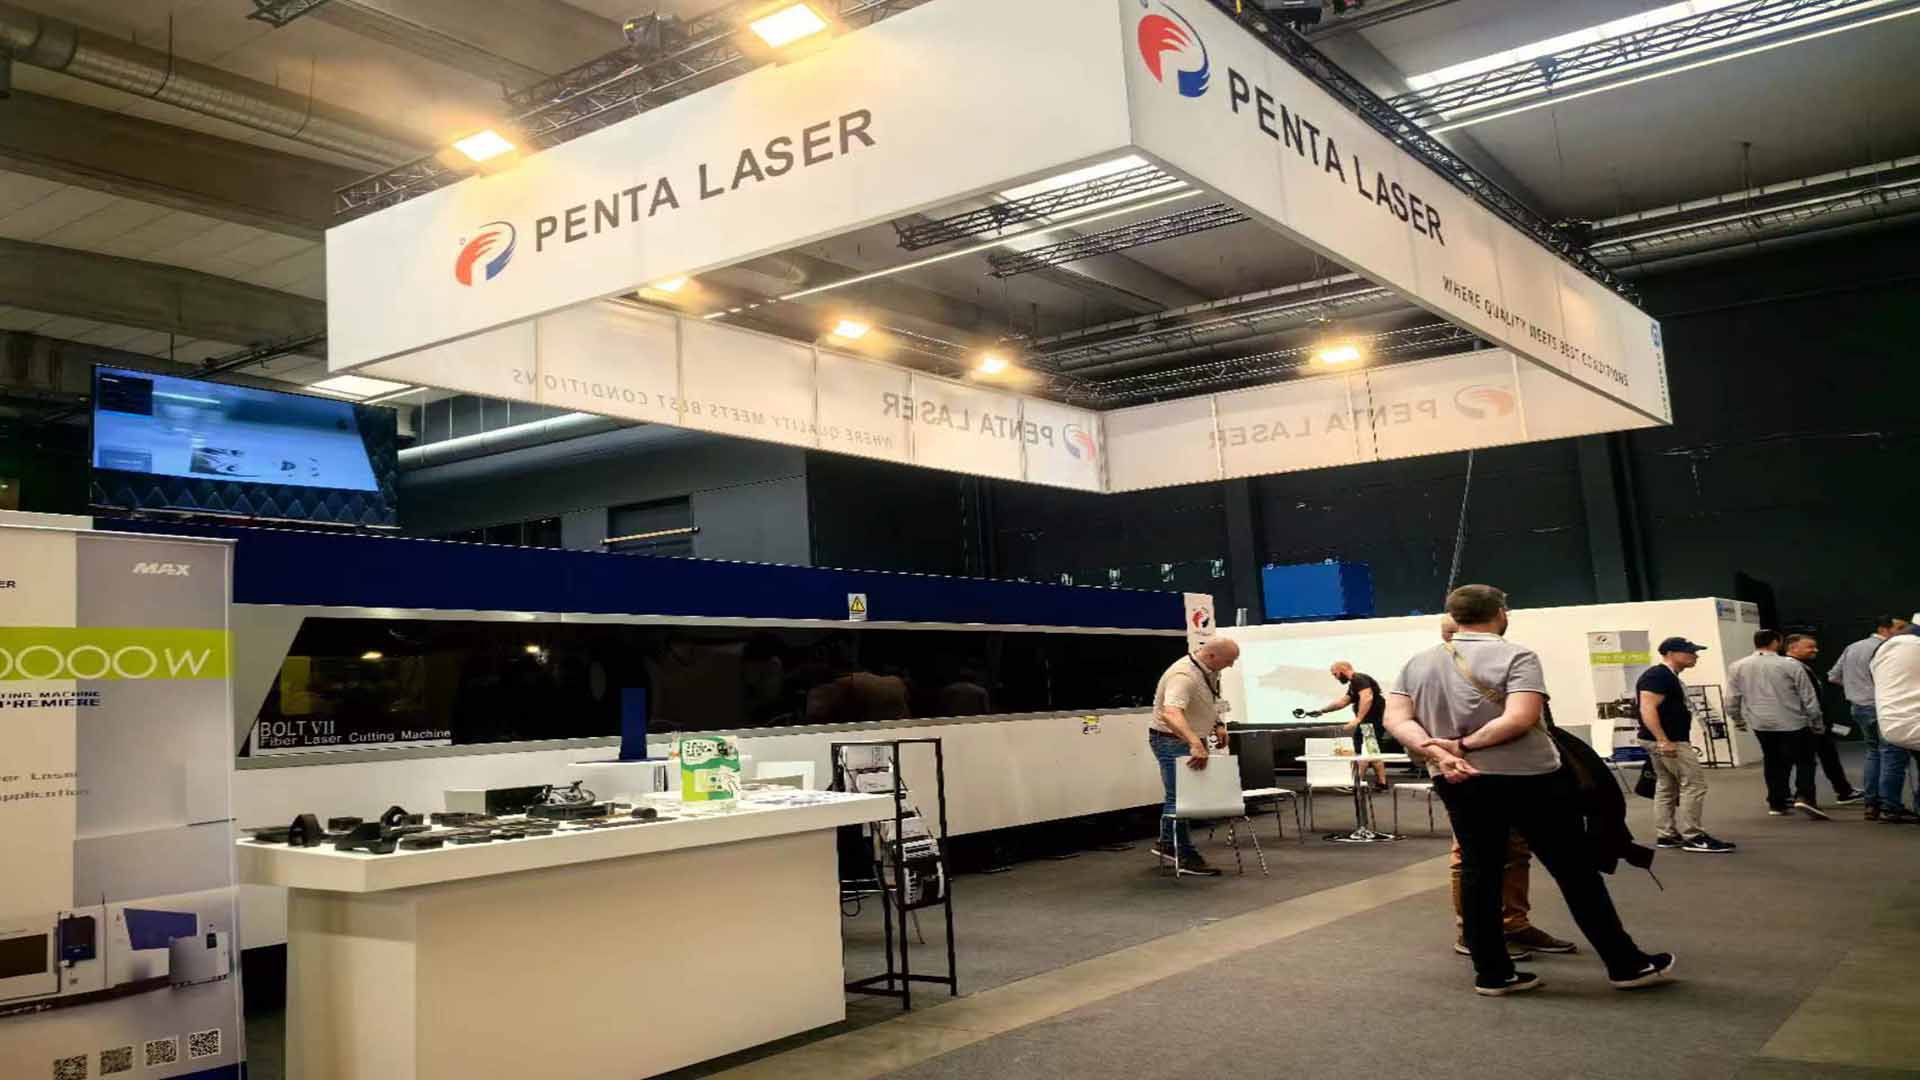 Bélgica e Tailândia trabalham juntas em exposições duplas, a série Penta Laser BOLT 7 atrai atenção global